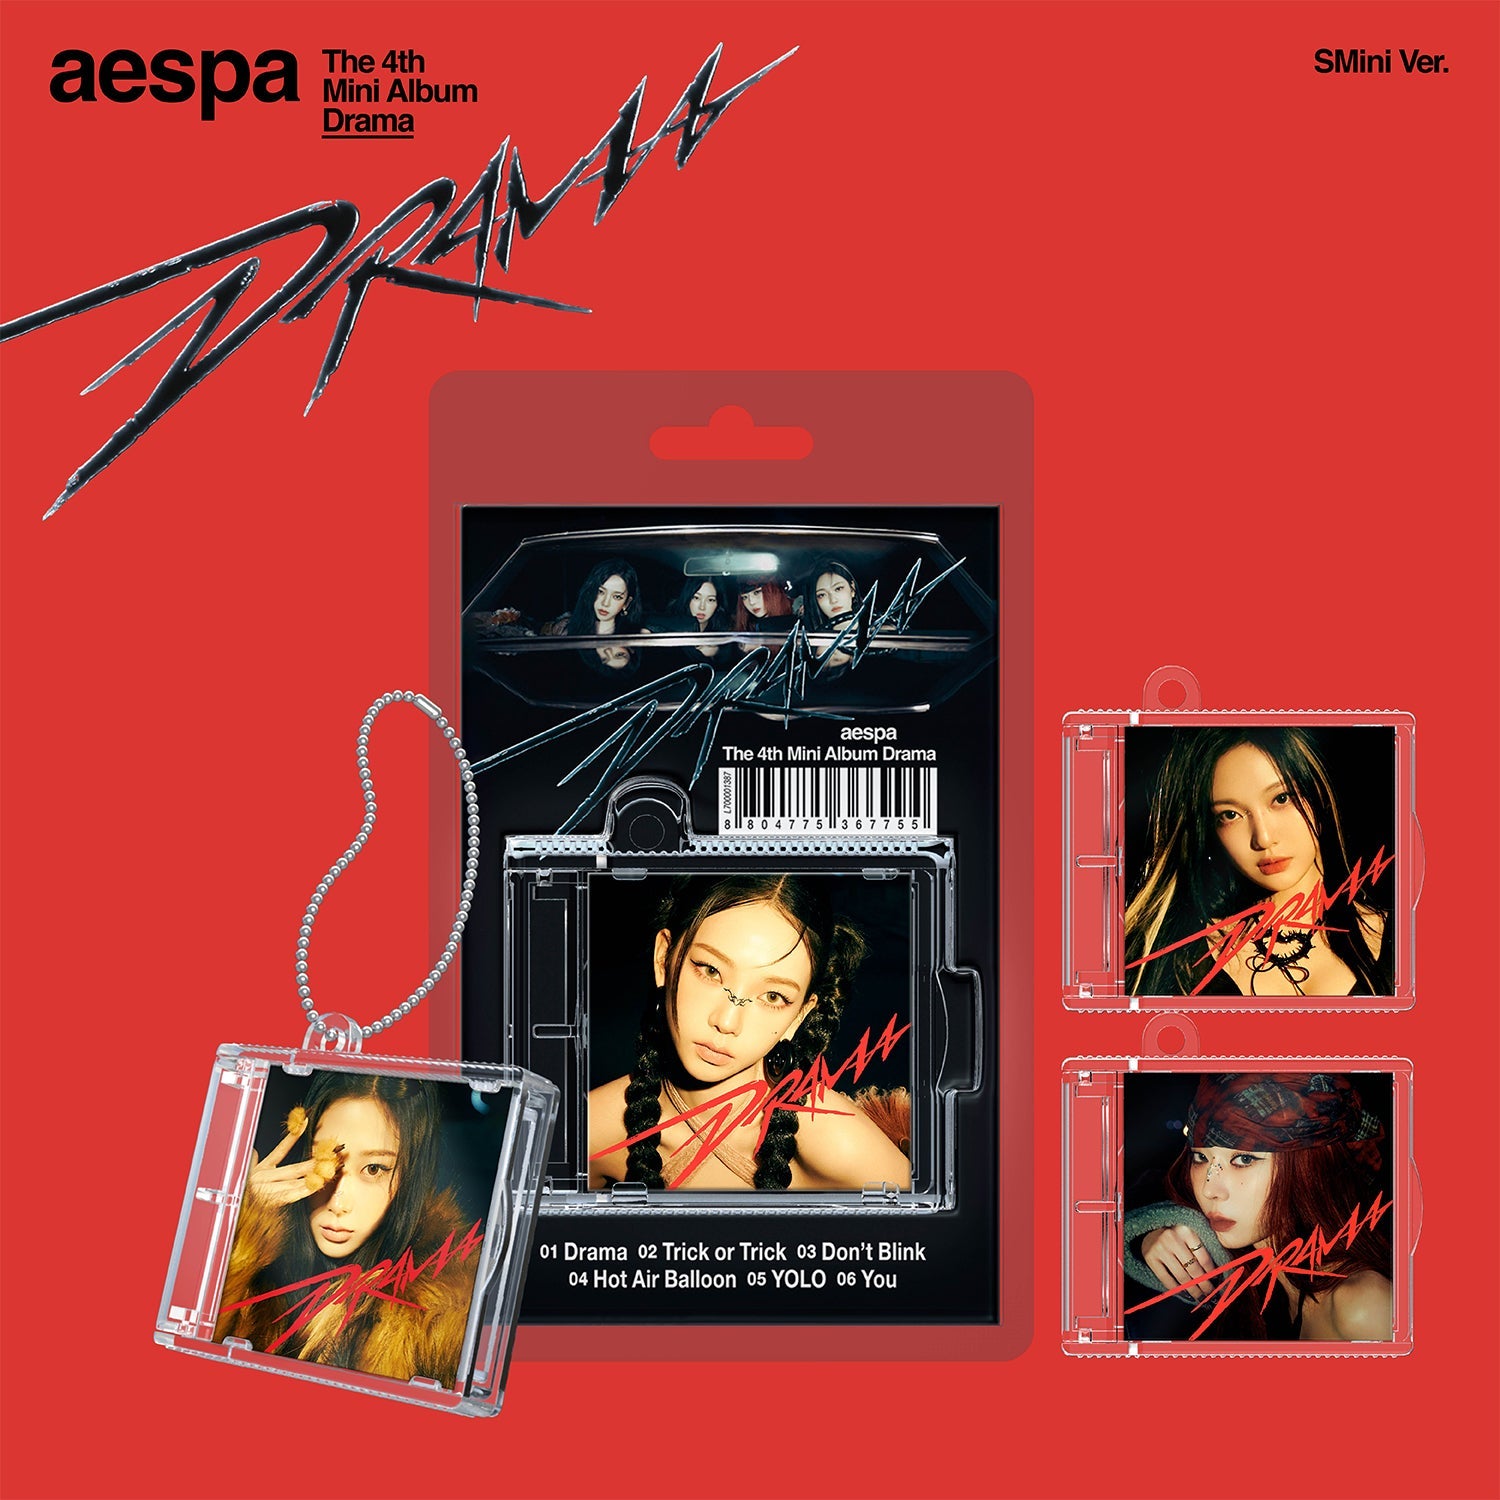 AESPA 4TH MINI ALBUM 'DRAMA' (SMINI) COVER